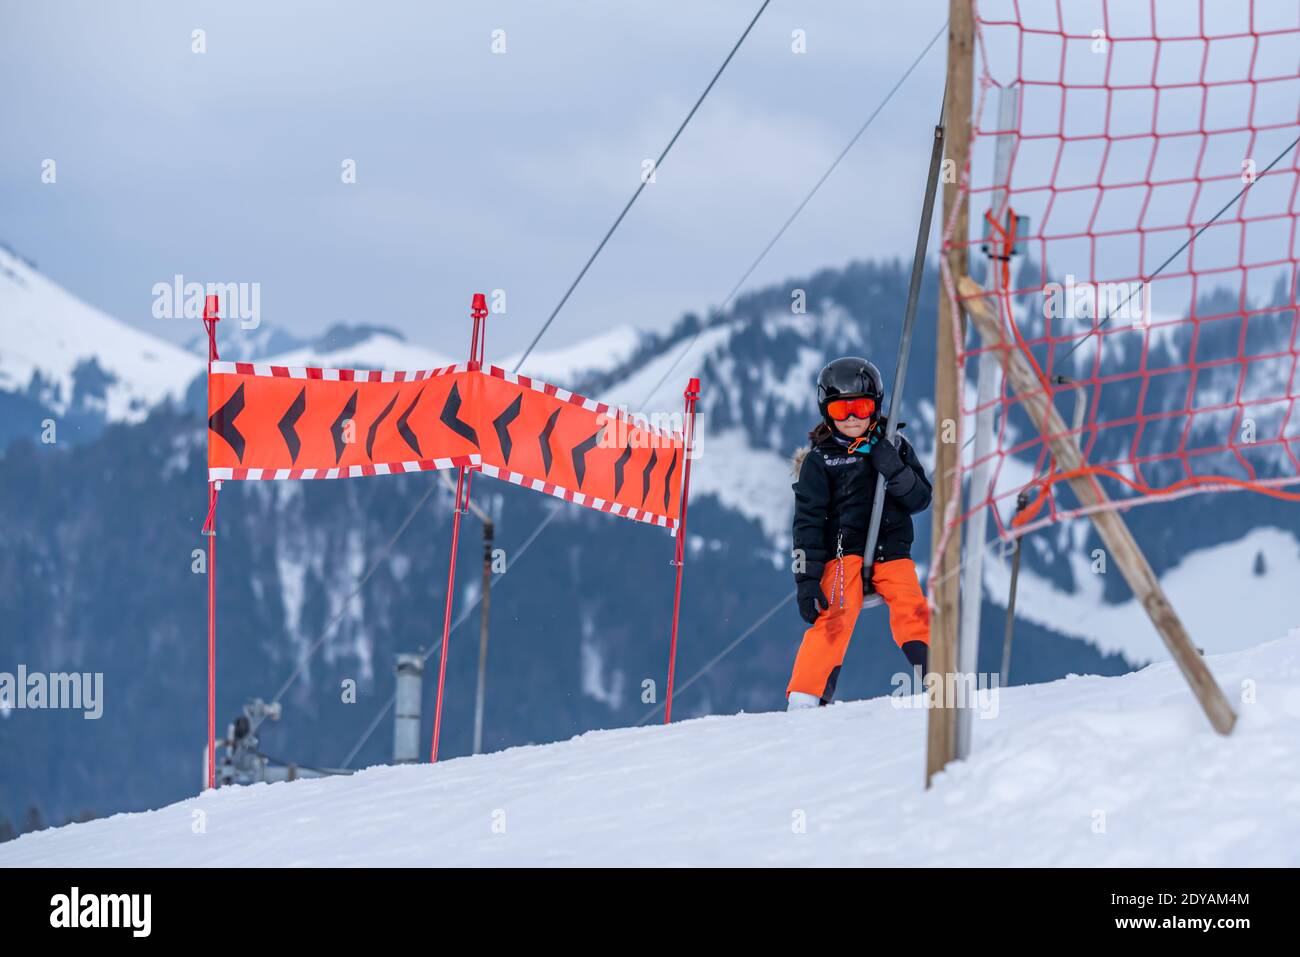 Skifahren im Schnee. Ein asiatisches Mädchen, das auf dem Skilift sitzt, indem es das Seil ergreifet und Skistöcke hält. Urlaub in der Schweiz. Frohe Kindheit. Stockfoto